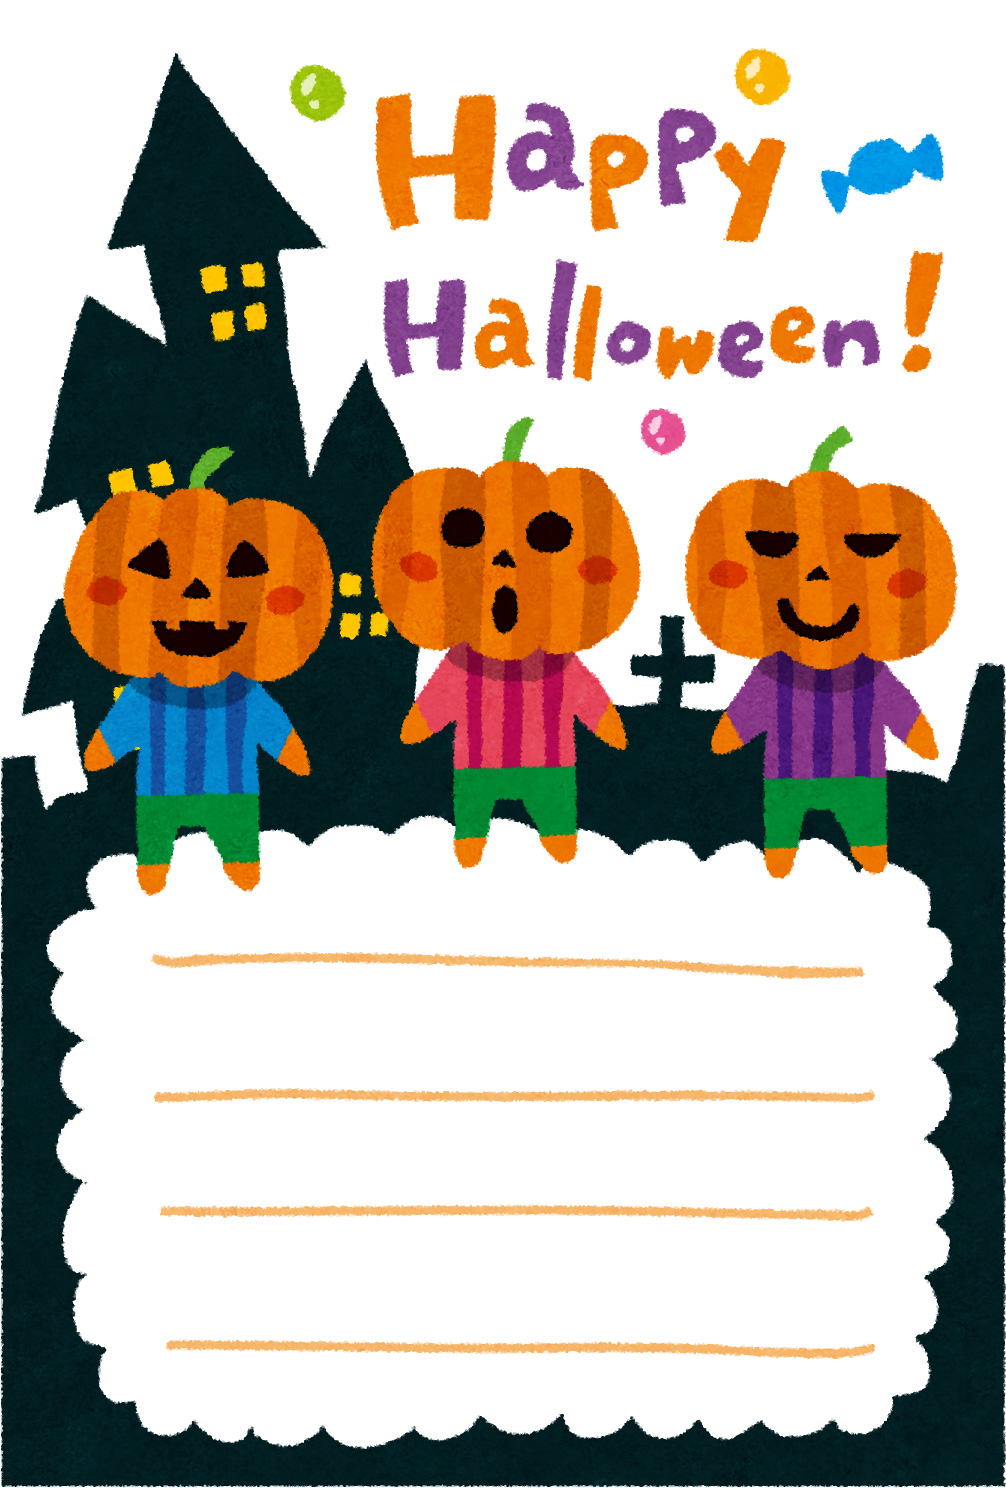 無料イラスト かわいいフリー素材集 ハロウィンのグリーティングカードのテンプレート かぼちゃ3兄弟